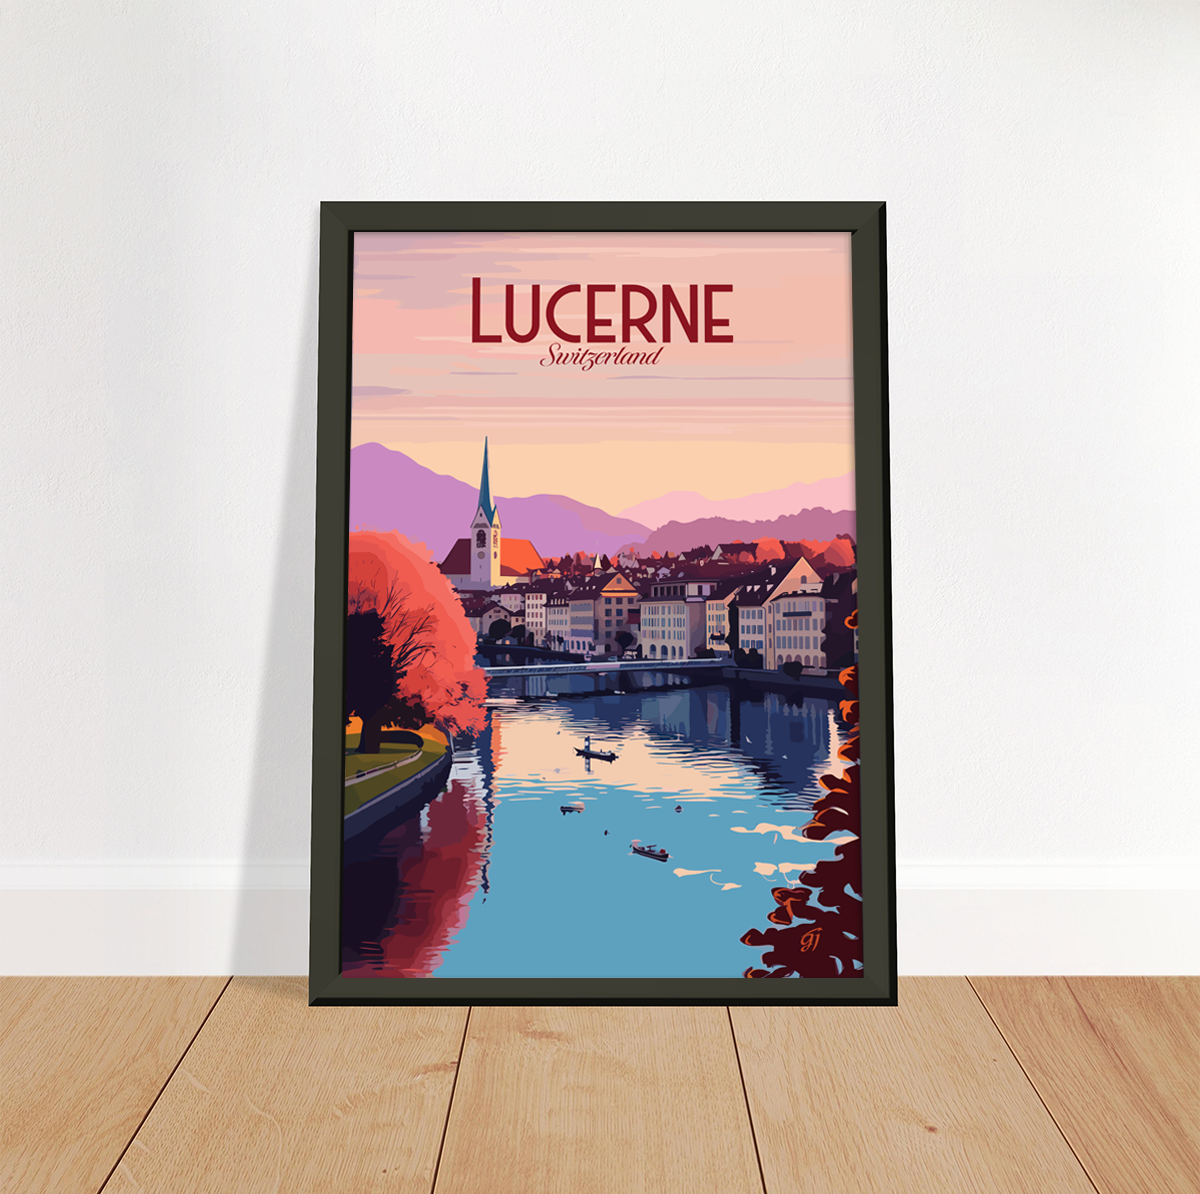 Lucerne poster by bon voyage design